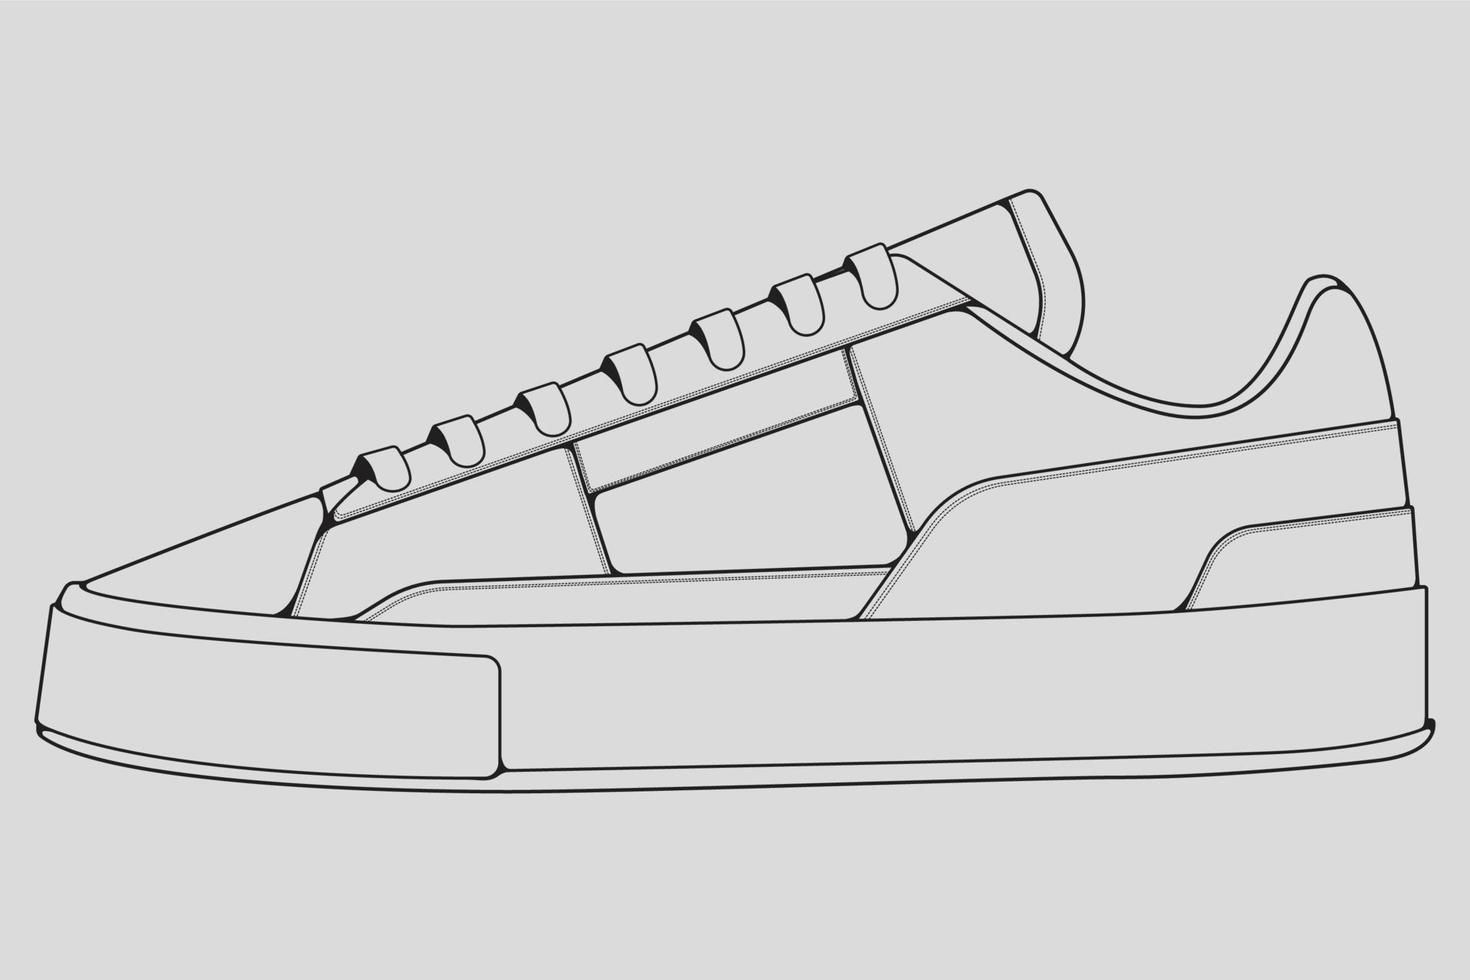 schoenen sneaker schets tekening vector, sneakers getekend in een schets stijl, zwarte lijn sneaker trainers sjabloon omtrek, vector illustratie.